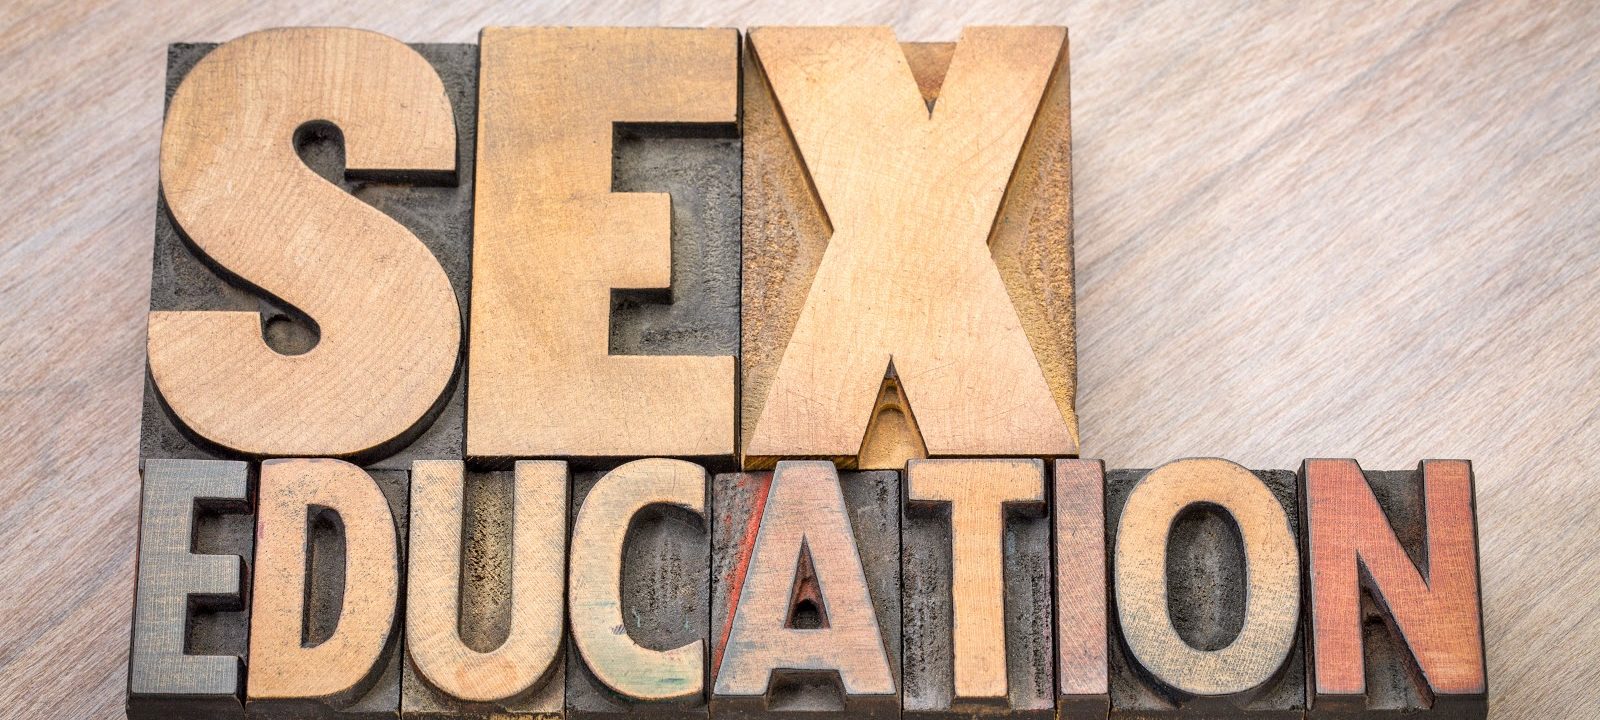 sex eduction words